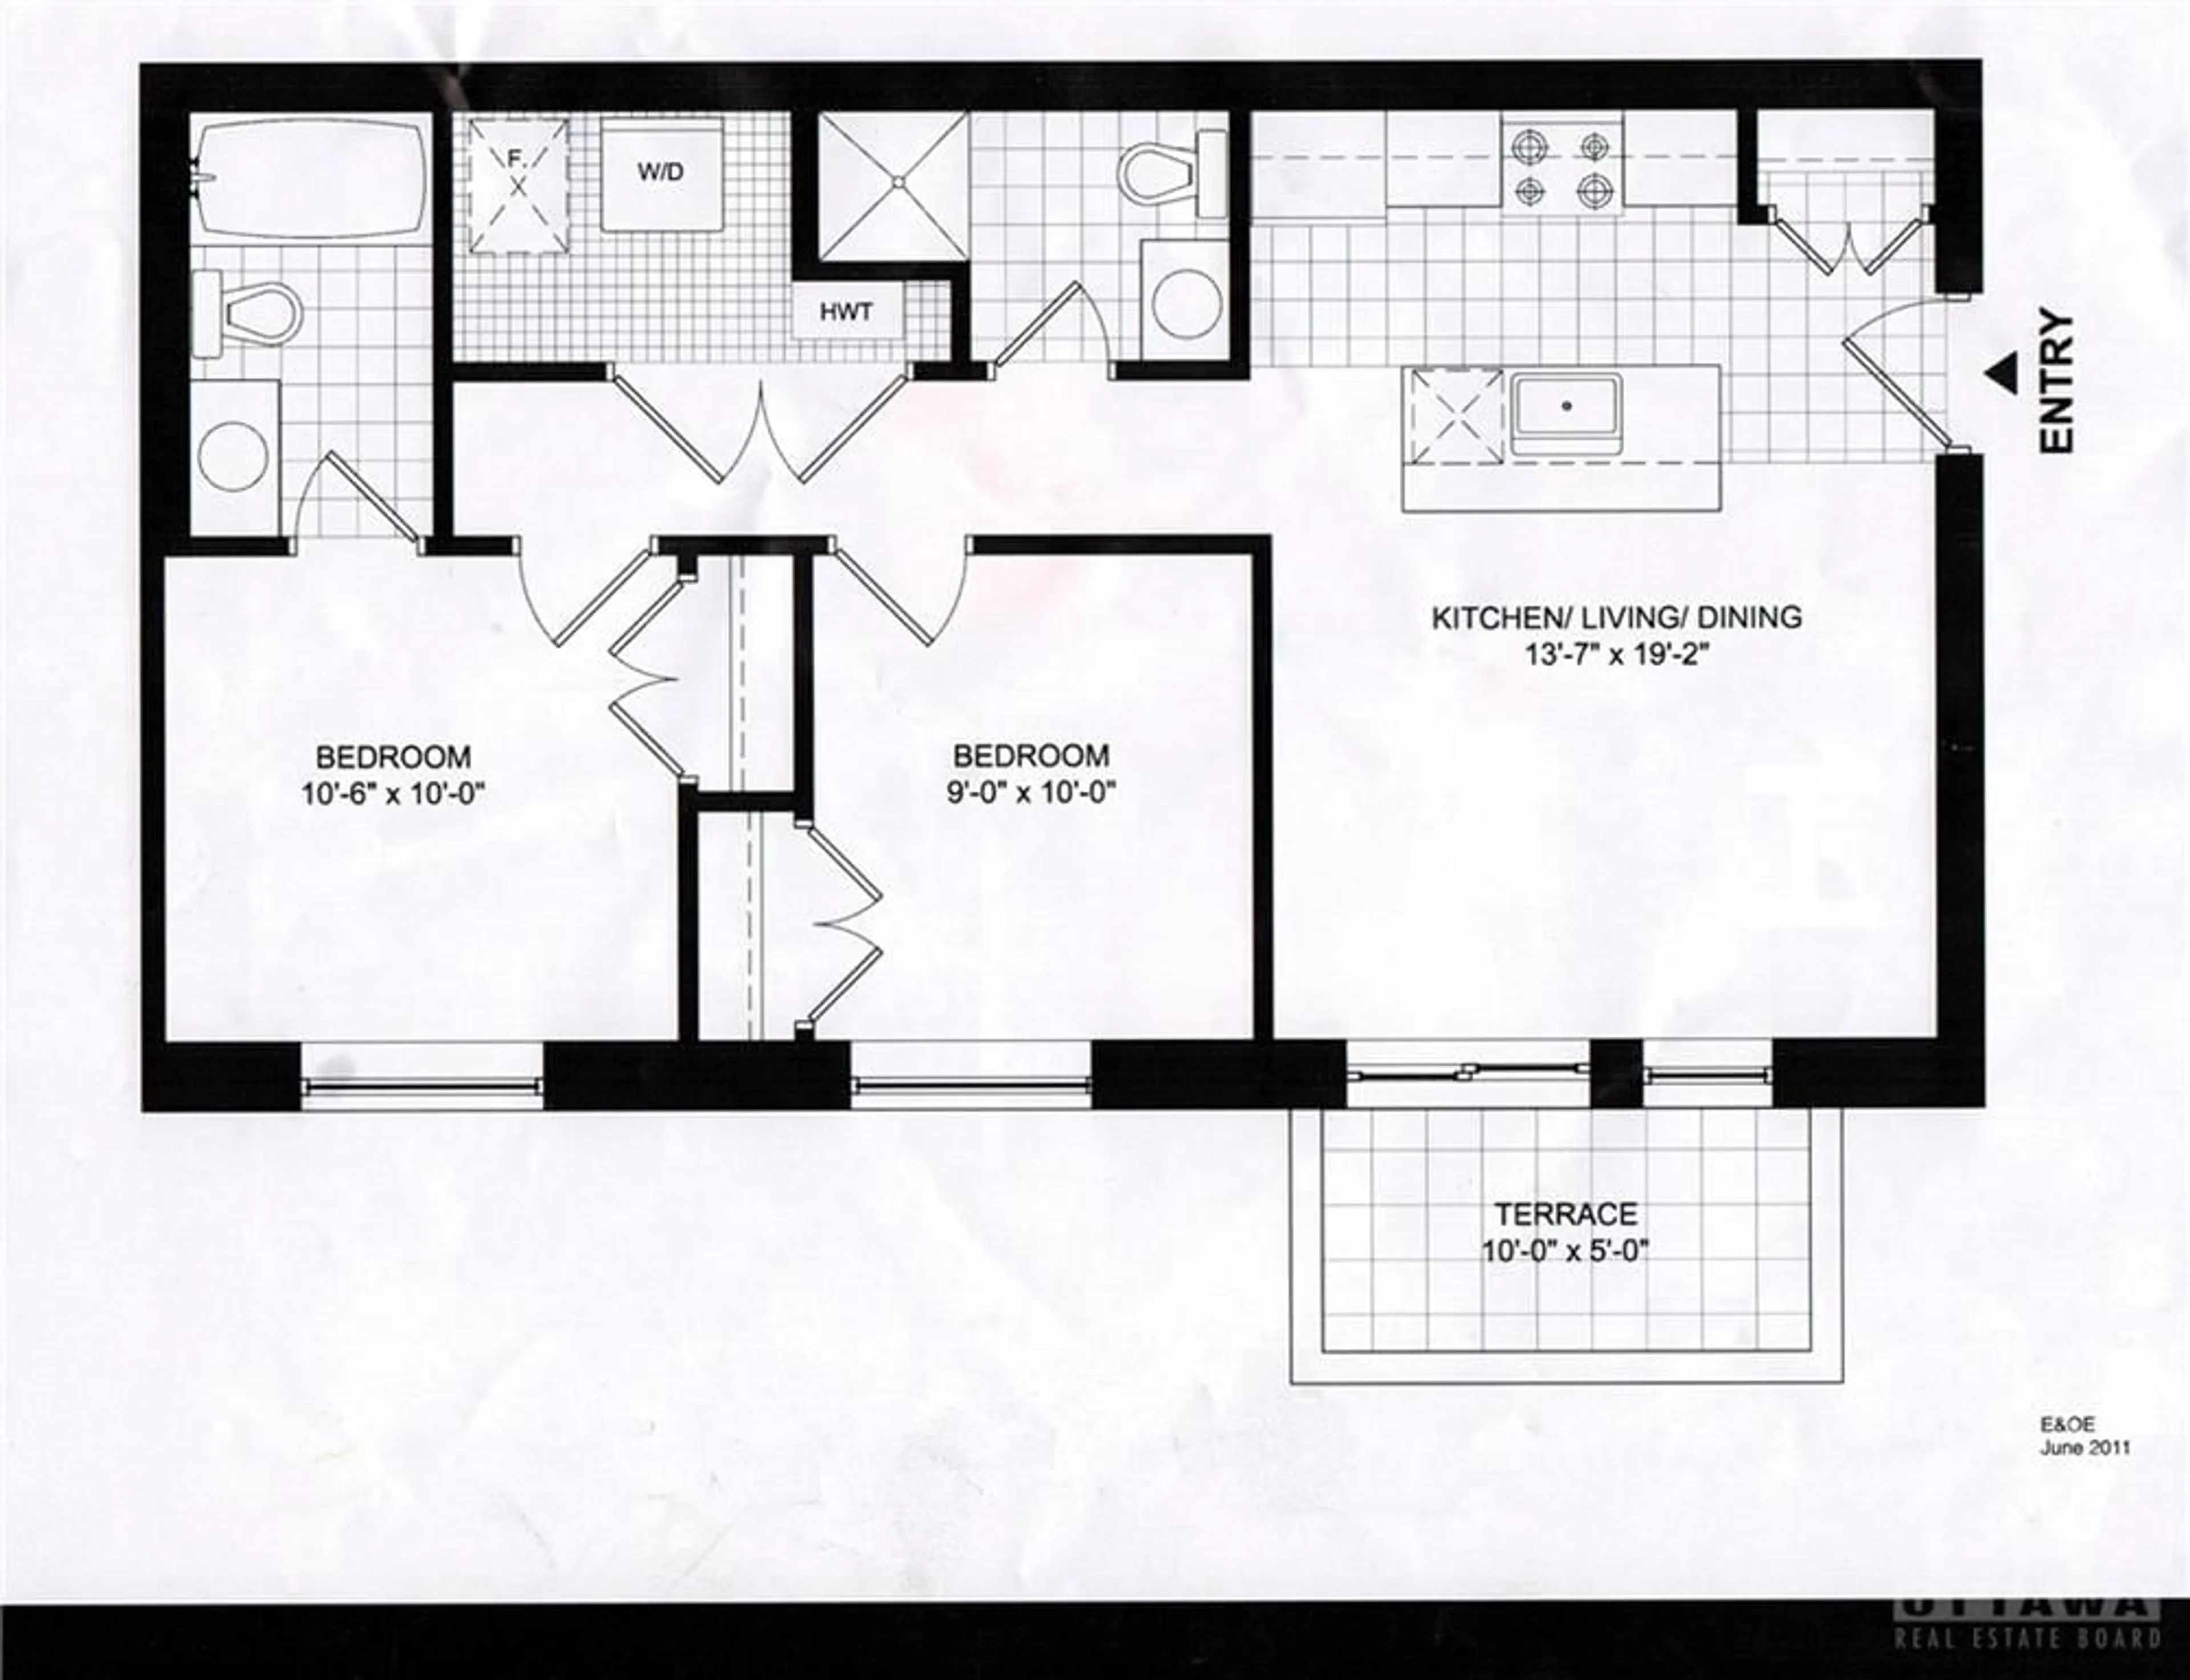 Floor plan for 334 EVEREST Pvt #A, Ottawa Ontario K1G 4E4